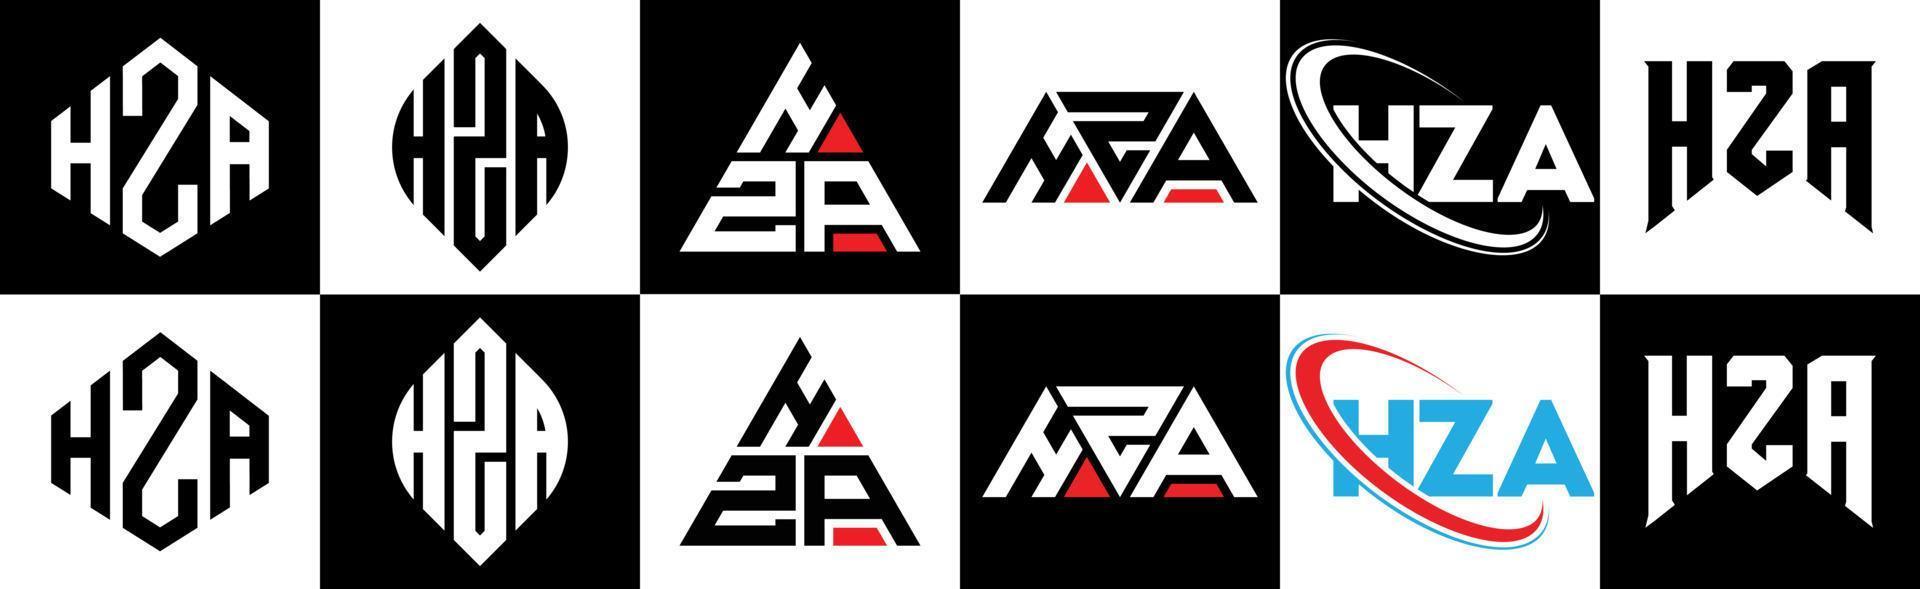 création de logo de lettre hza en six styles. hza polygone, cercle, triangle, hexagone, style plat et simple avec logo de lettre de variation de couleur noir et blanc dans un plan de travail. hza logo minimaliste et classique vecteur